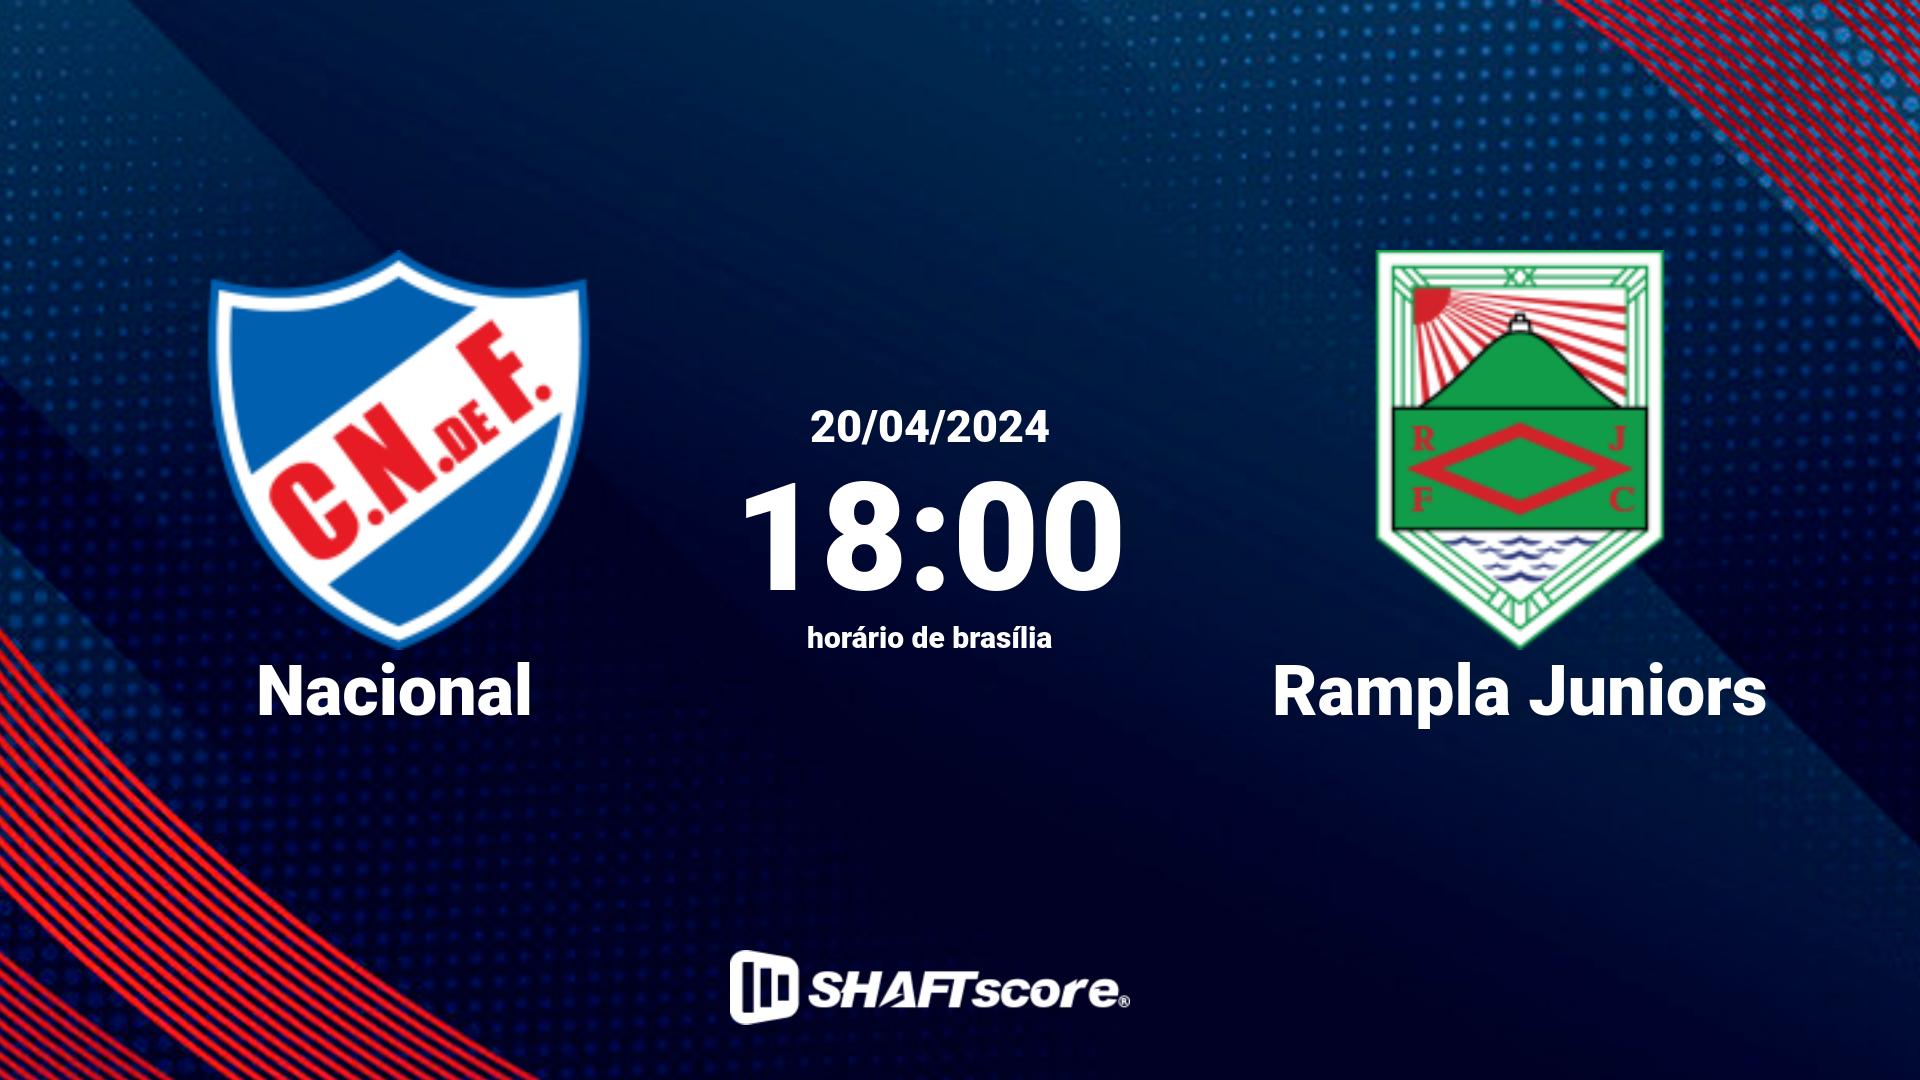 Estatísticas do jogo Nacional vs Rampla Juniors 20.04 18:00